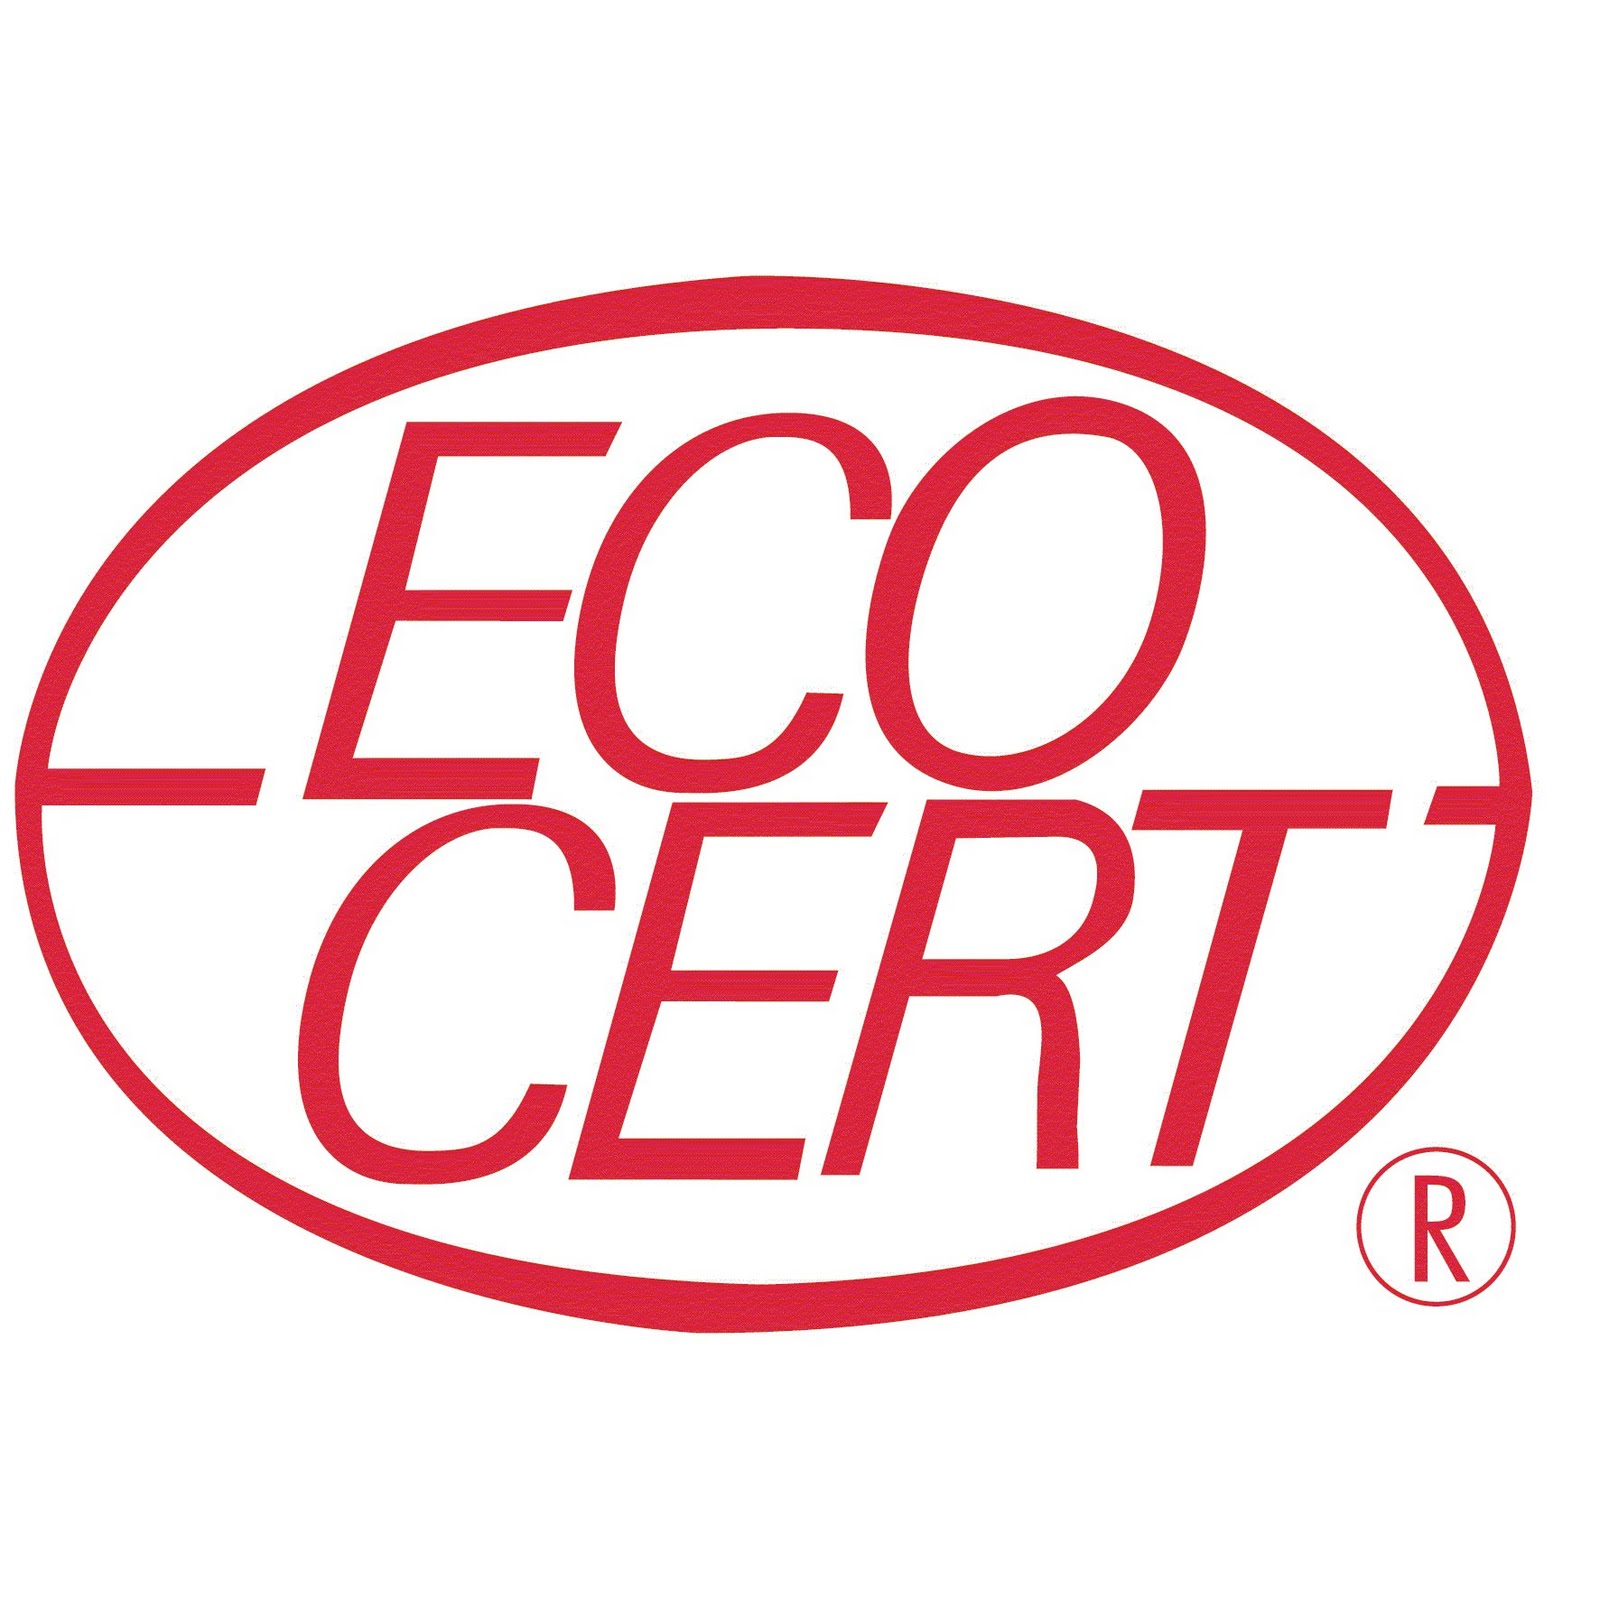 Coton bio, certificat délivré par ecocert greenlife